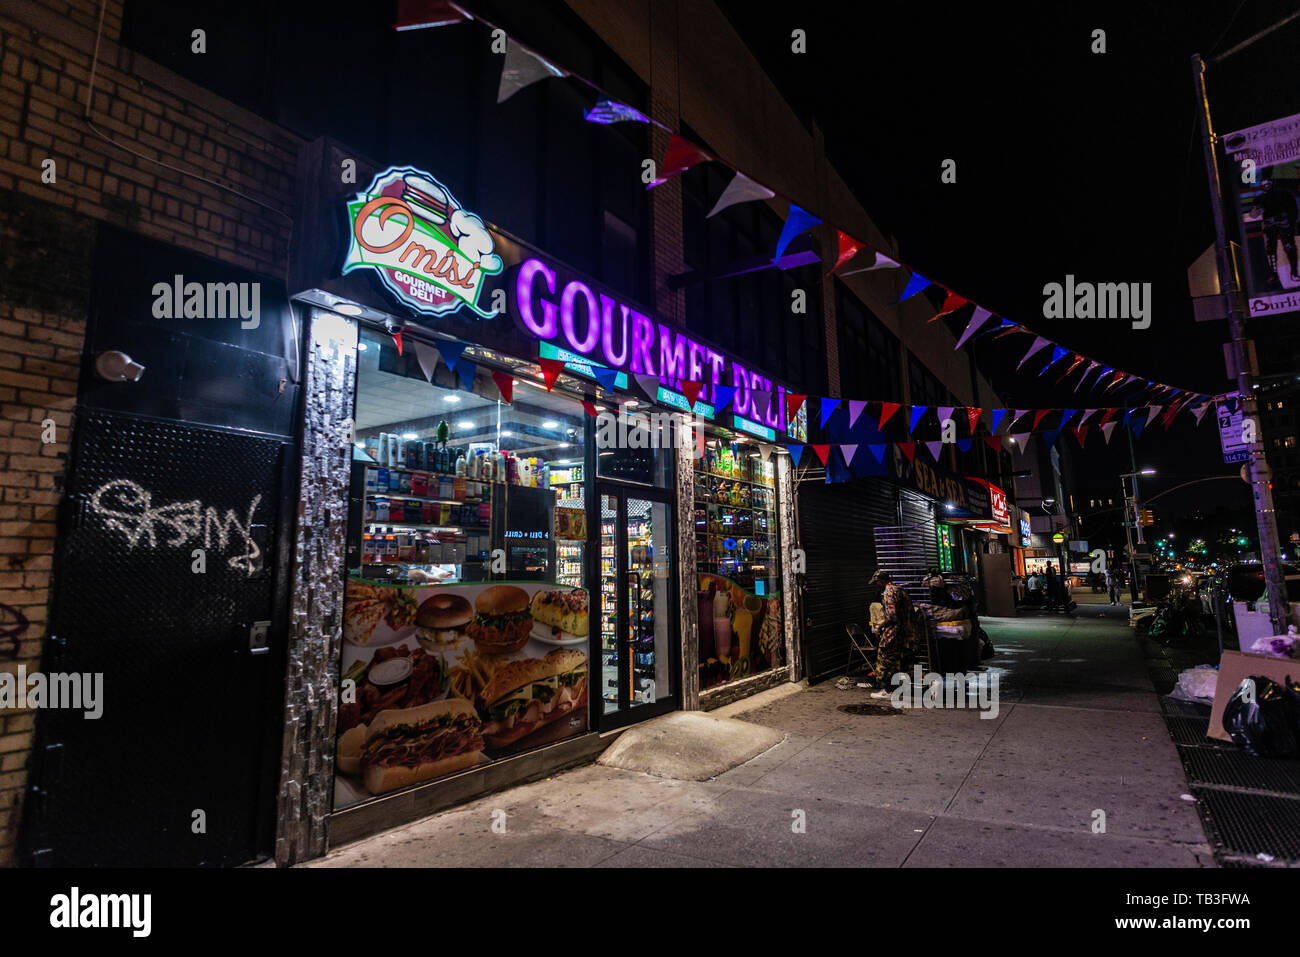 New York City, USA - 31. Juli 2018: Beleuchtetes Display von ein Lebensmittelgeschäft namens Gourmet Deli in der Nacht mit Menschen um in Harlem, Manhattan, New Yo Stockfoto